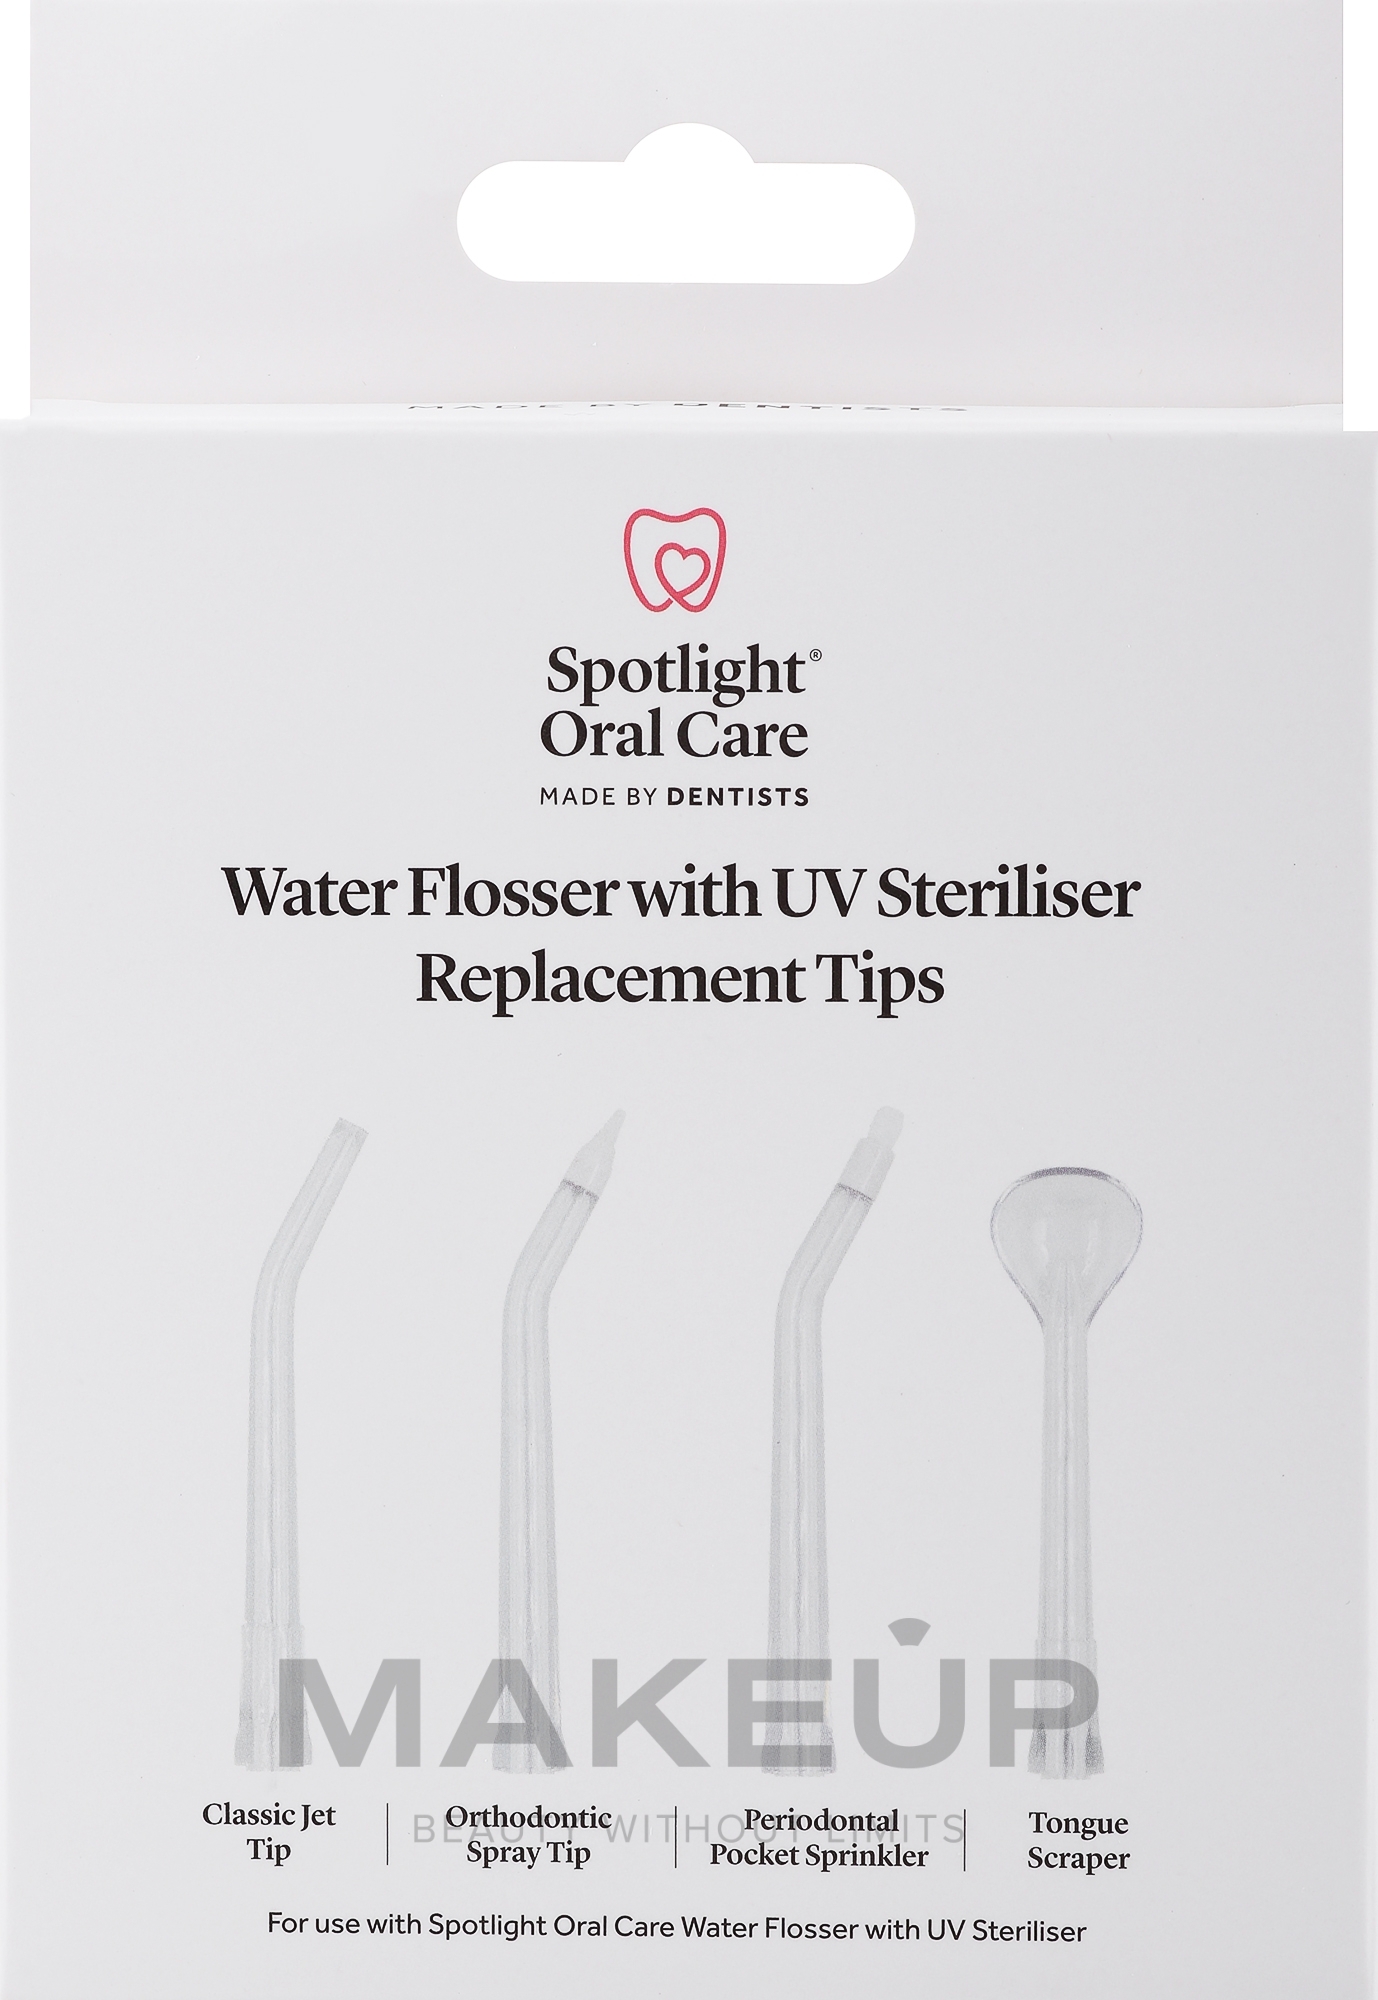 Wymienne głowice do irygatora - Spotlight Oral Care Water Flosser With UV Steriliser Replacement Tips — Zdjęcie 4 szt.